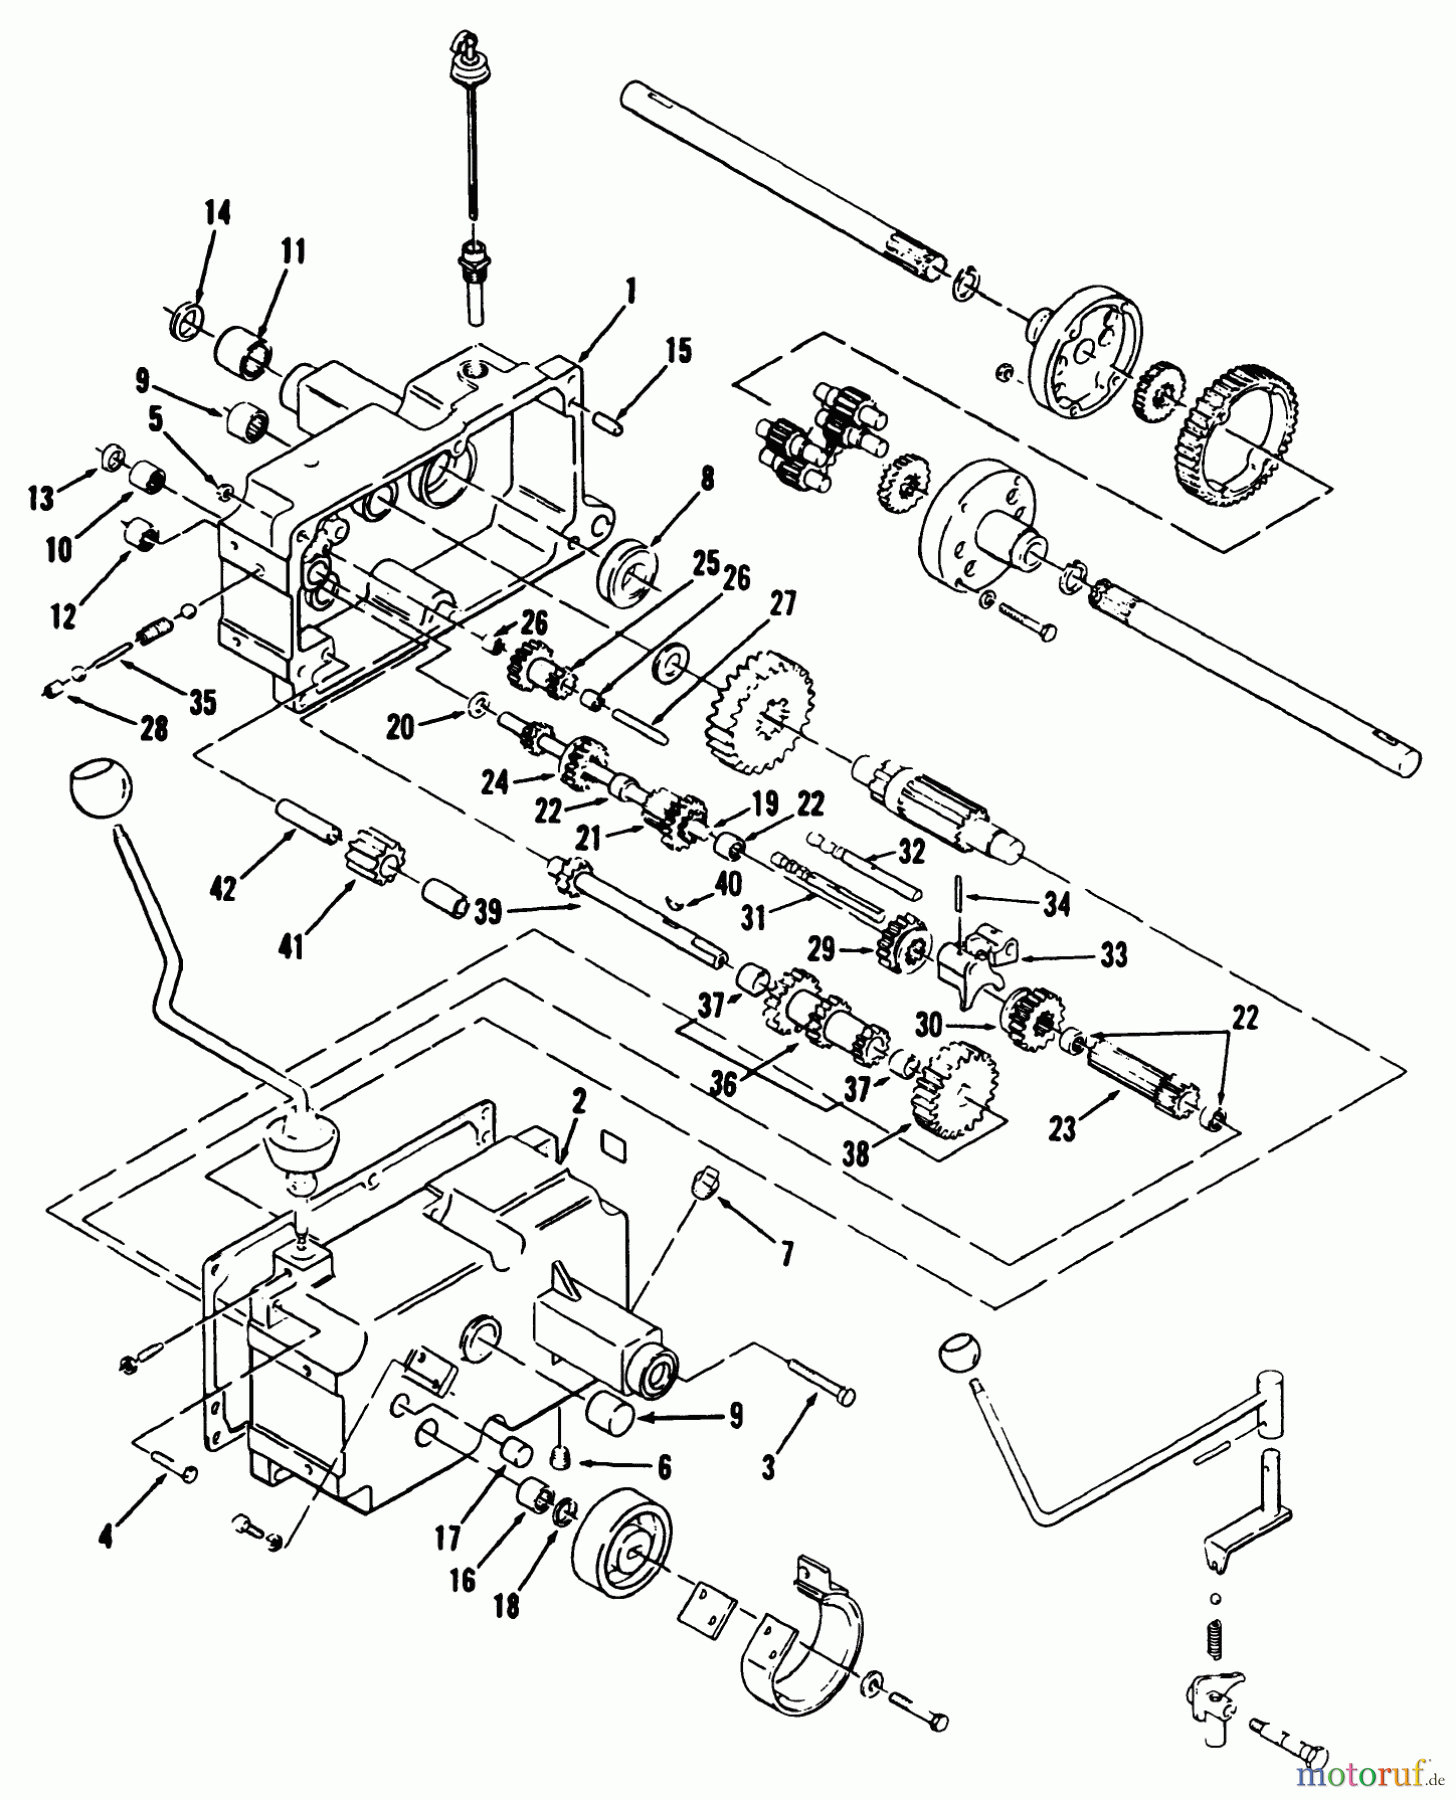  Toro Neu Mowers, Lawn & Garden Tractor Seite 1 31-12K804 (312-8) - Toro 312-8 Garden Tractor, 1992 (2000001-2999999) MECHANICAL TRANSMISSION 8-SPEED #1